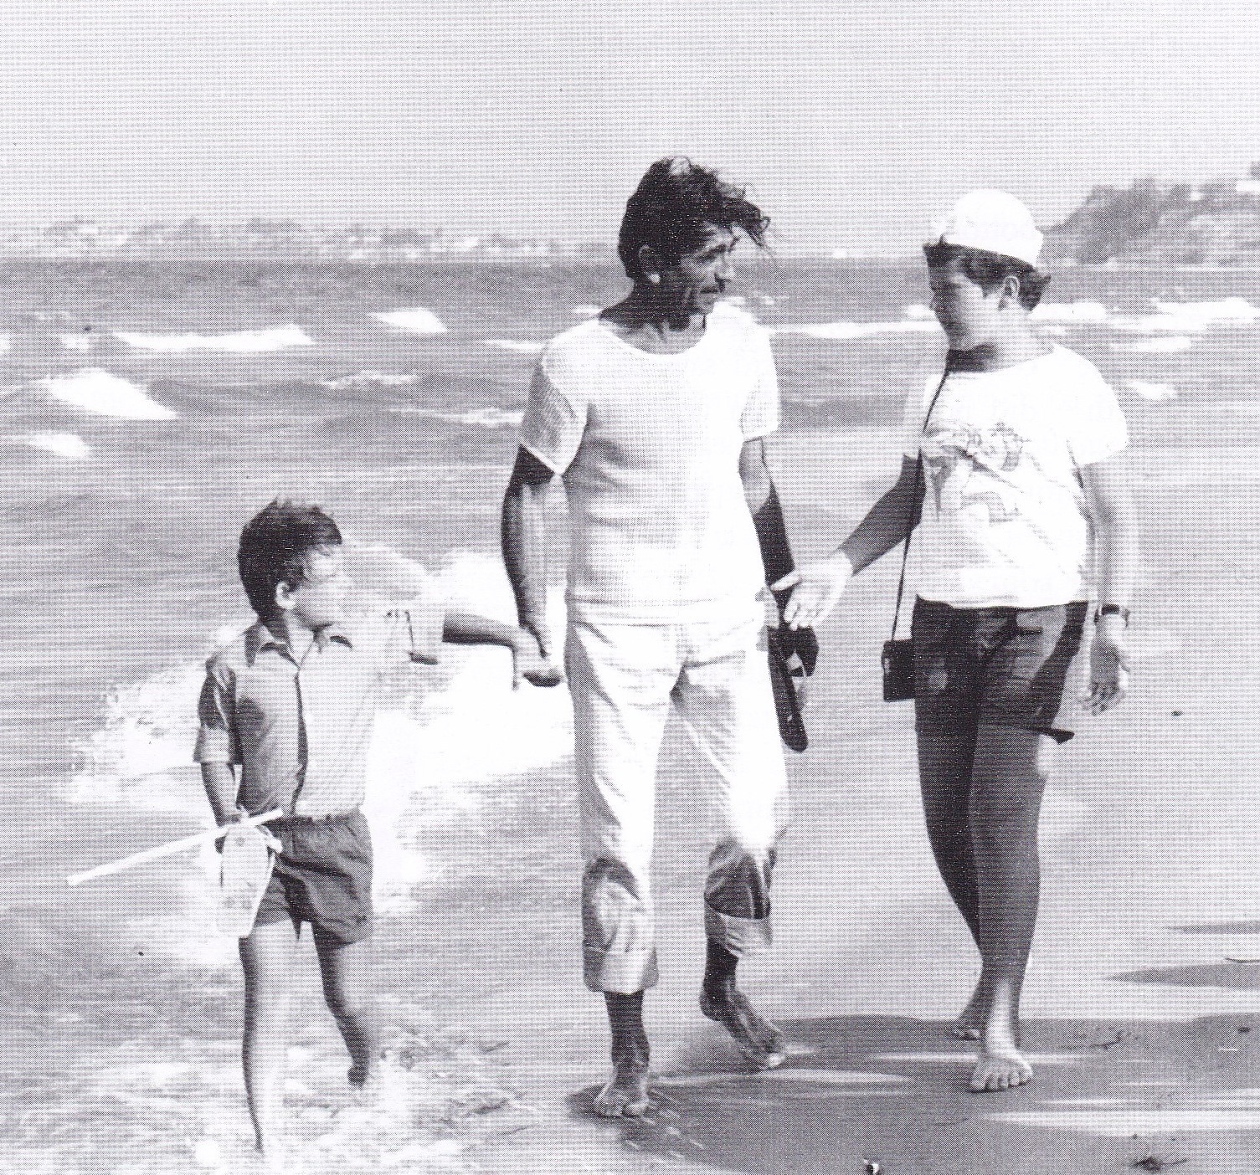 Премиерата на филма „С деца на море“ е на 17 ноември 1972 г.